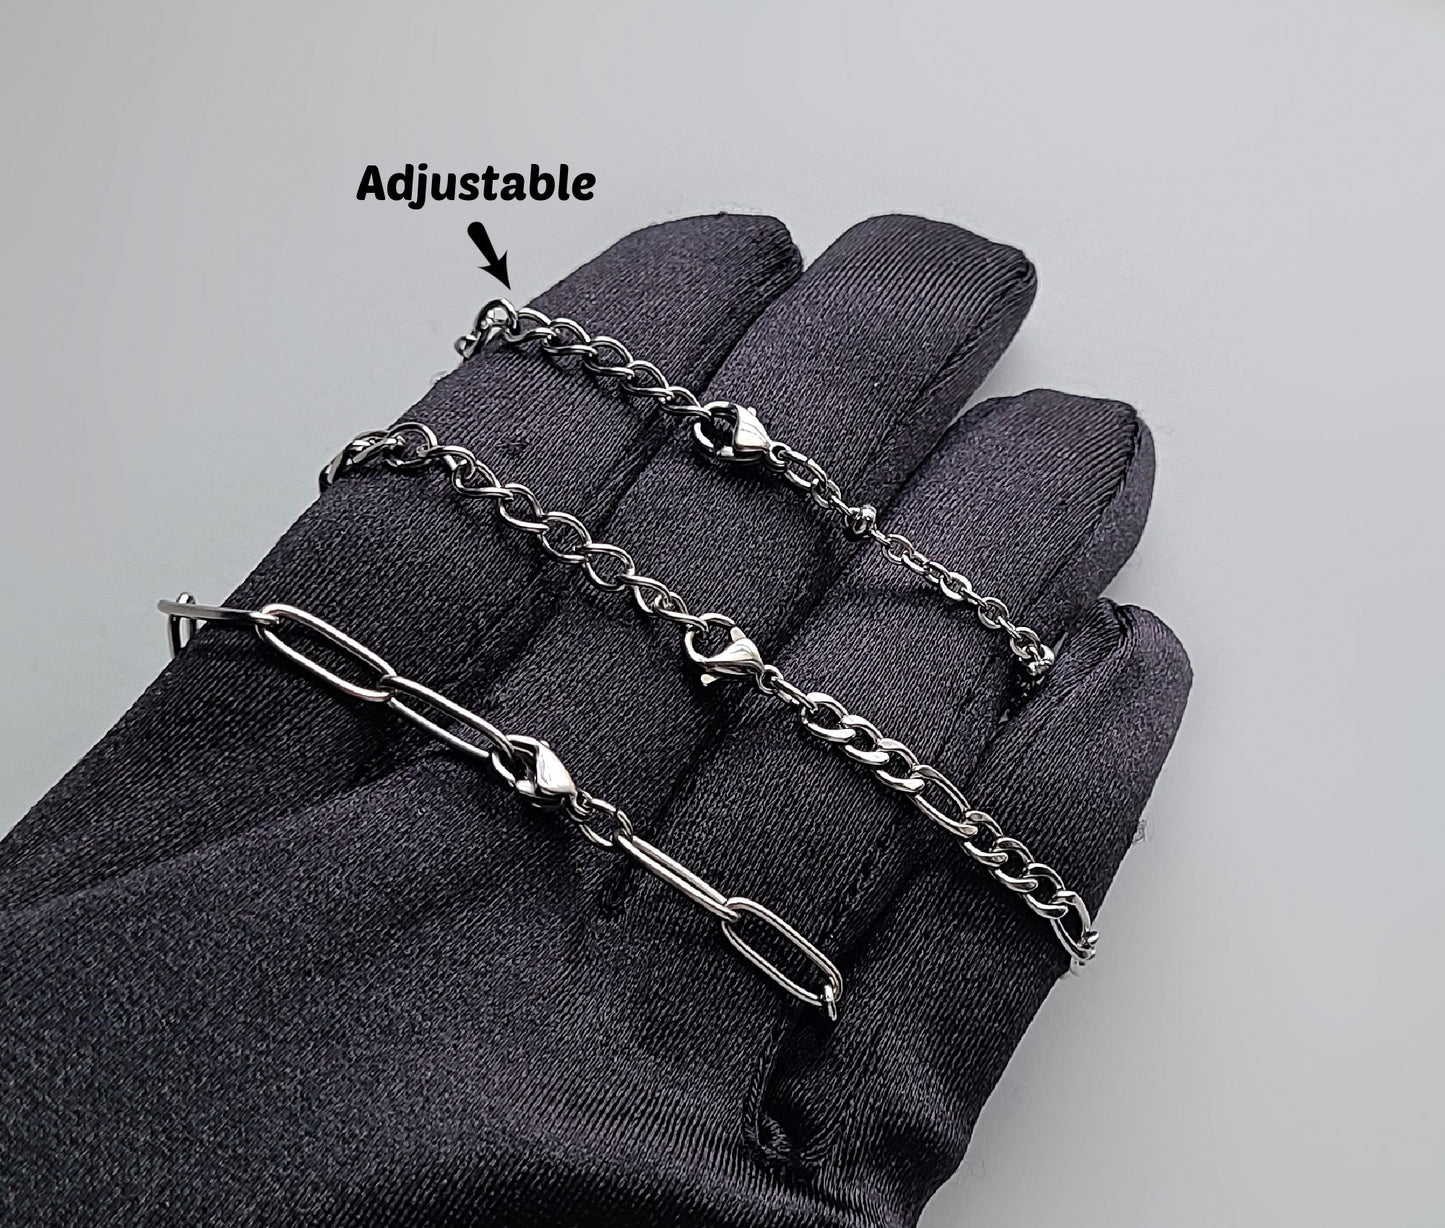 Stainless Steel Adjustable Twisted Links Bracelet / Anklet